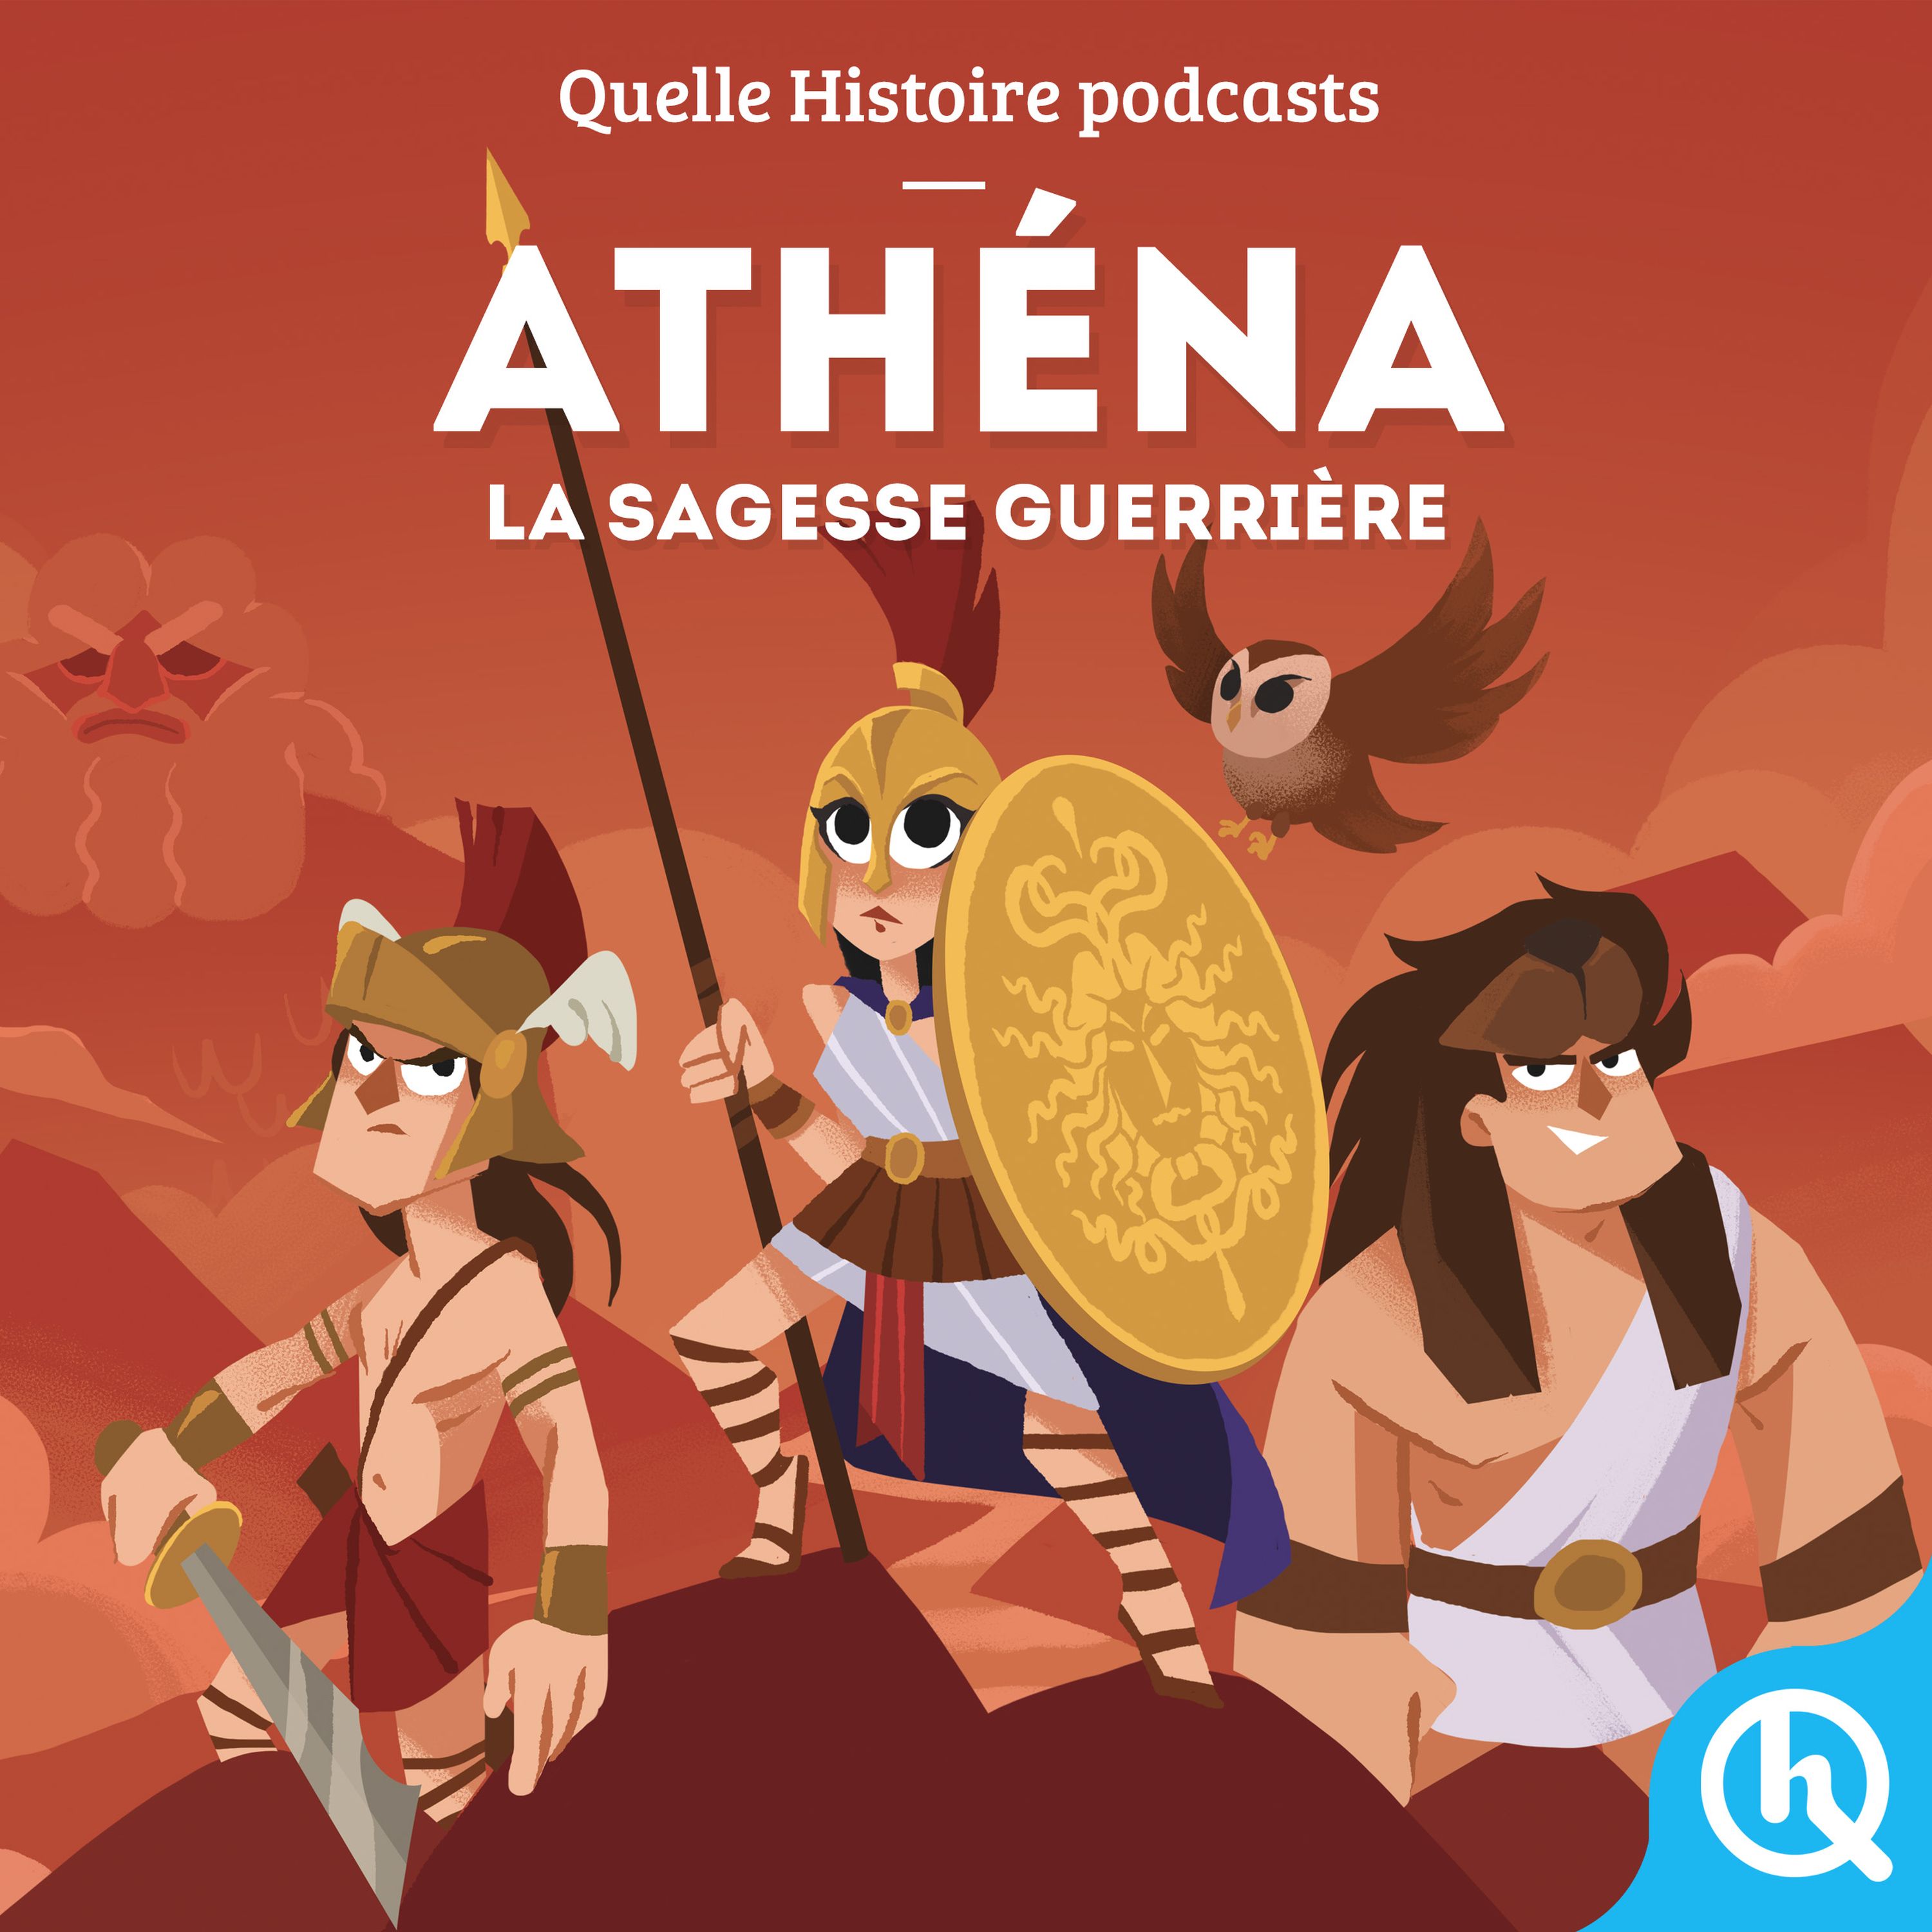 Athena, la sagesse guerrière